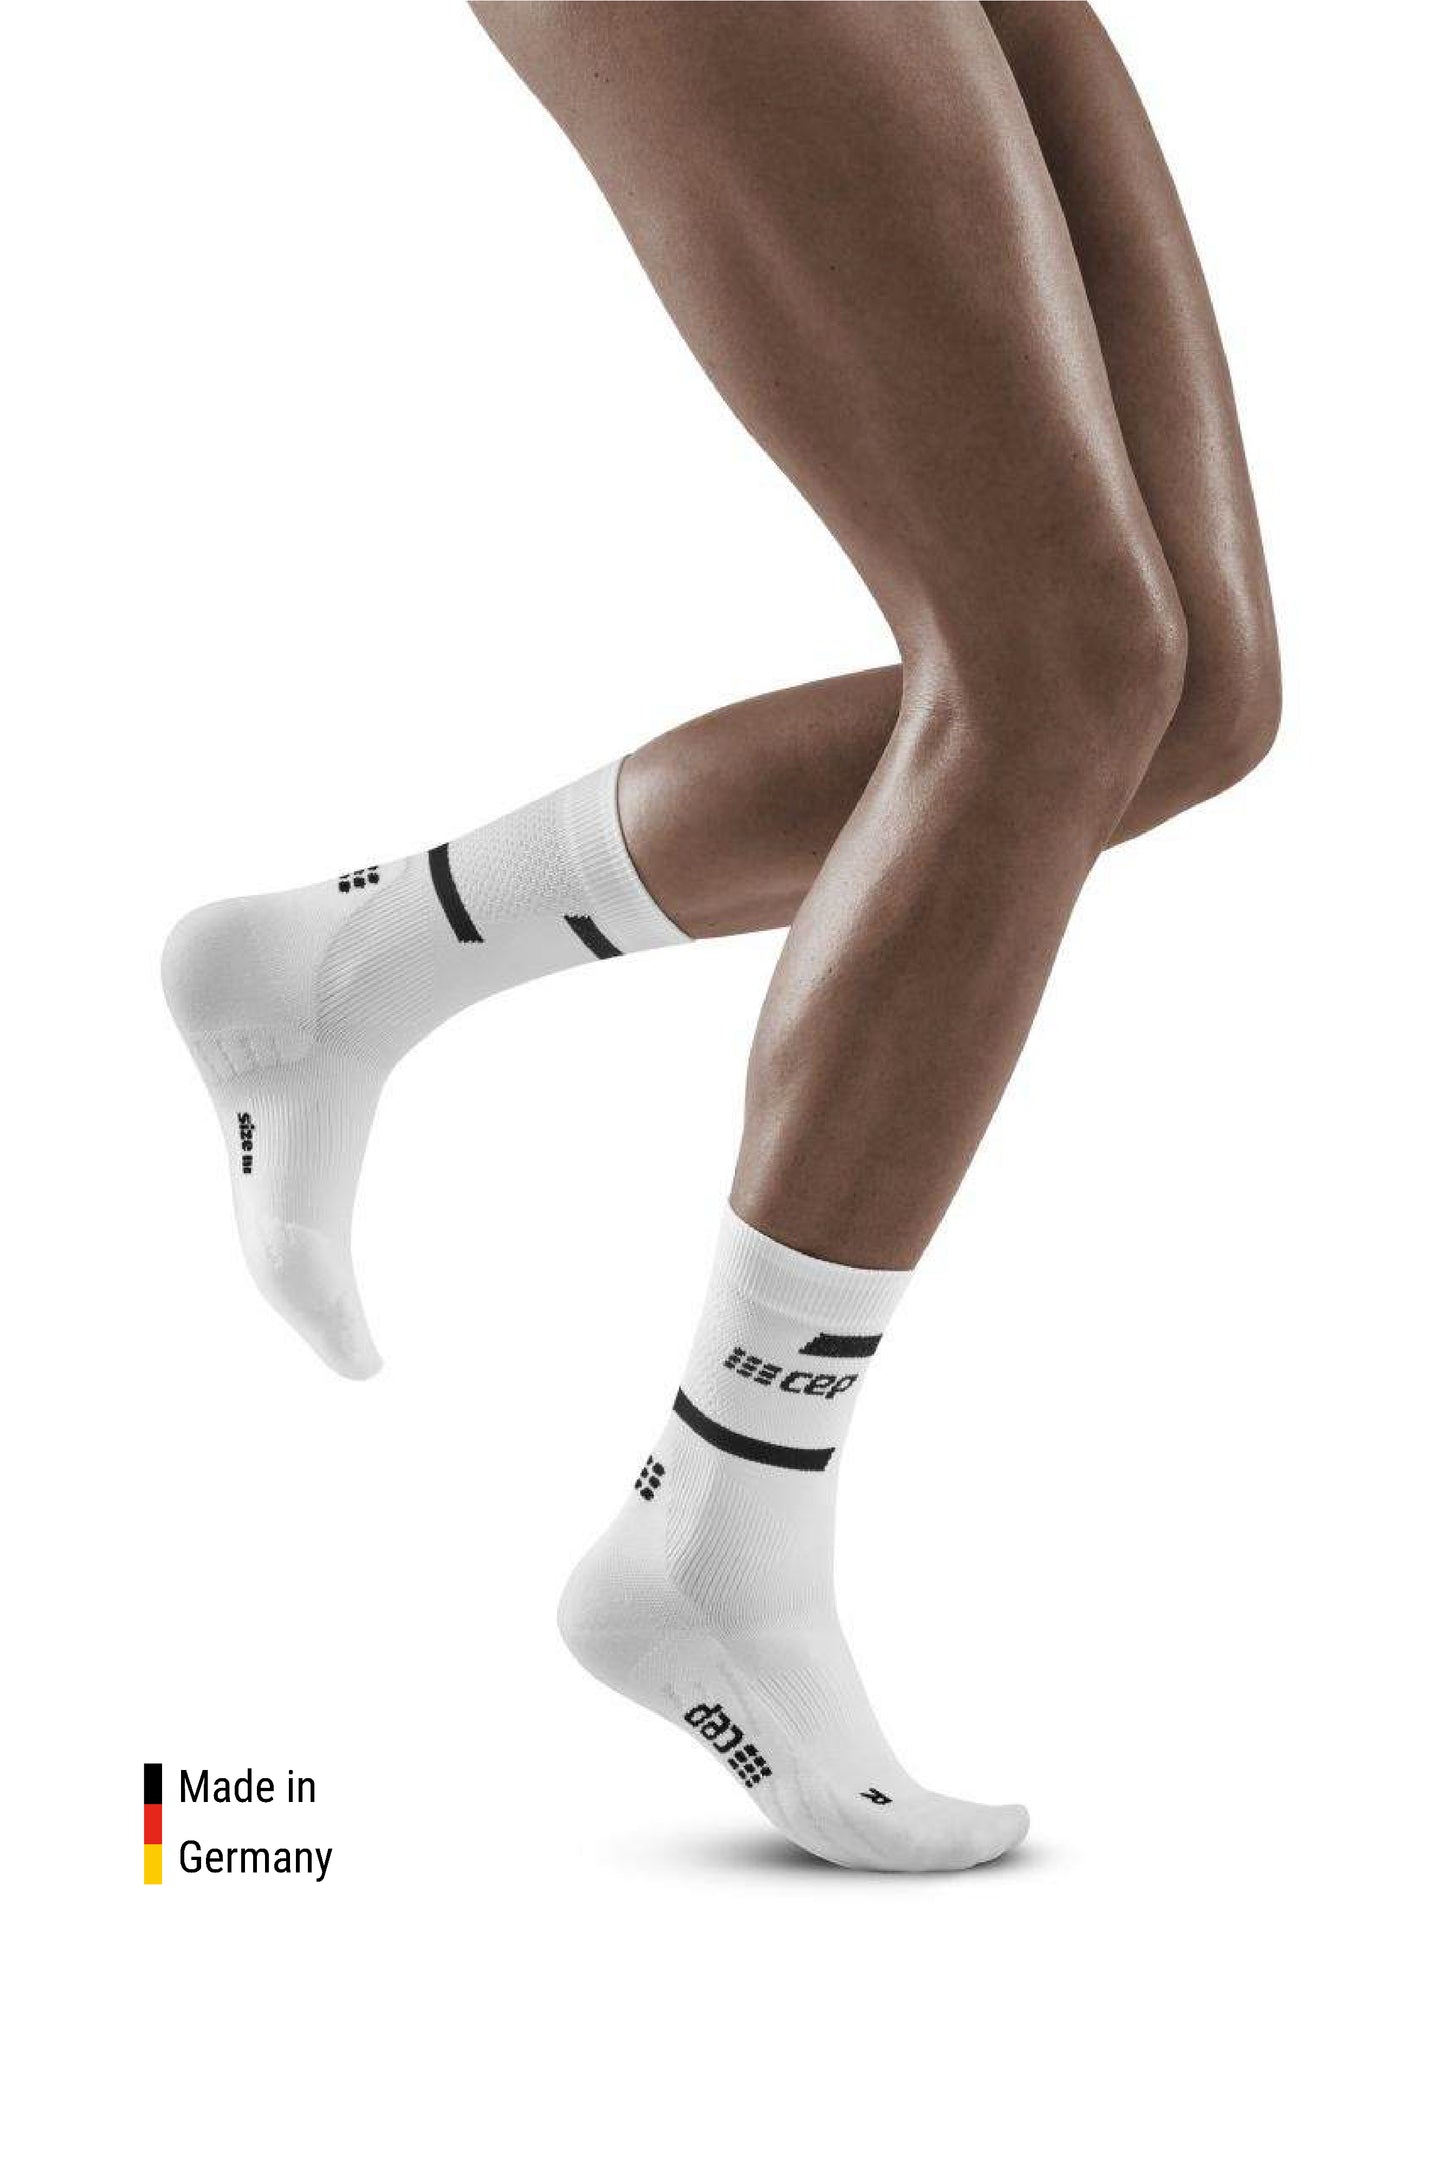 The Run Compression Mid Cut Socks Women